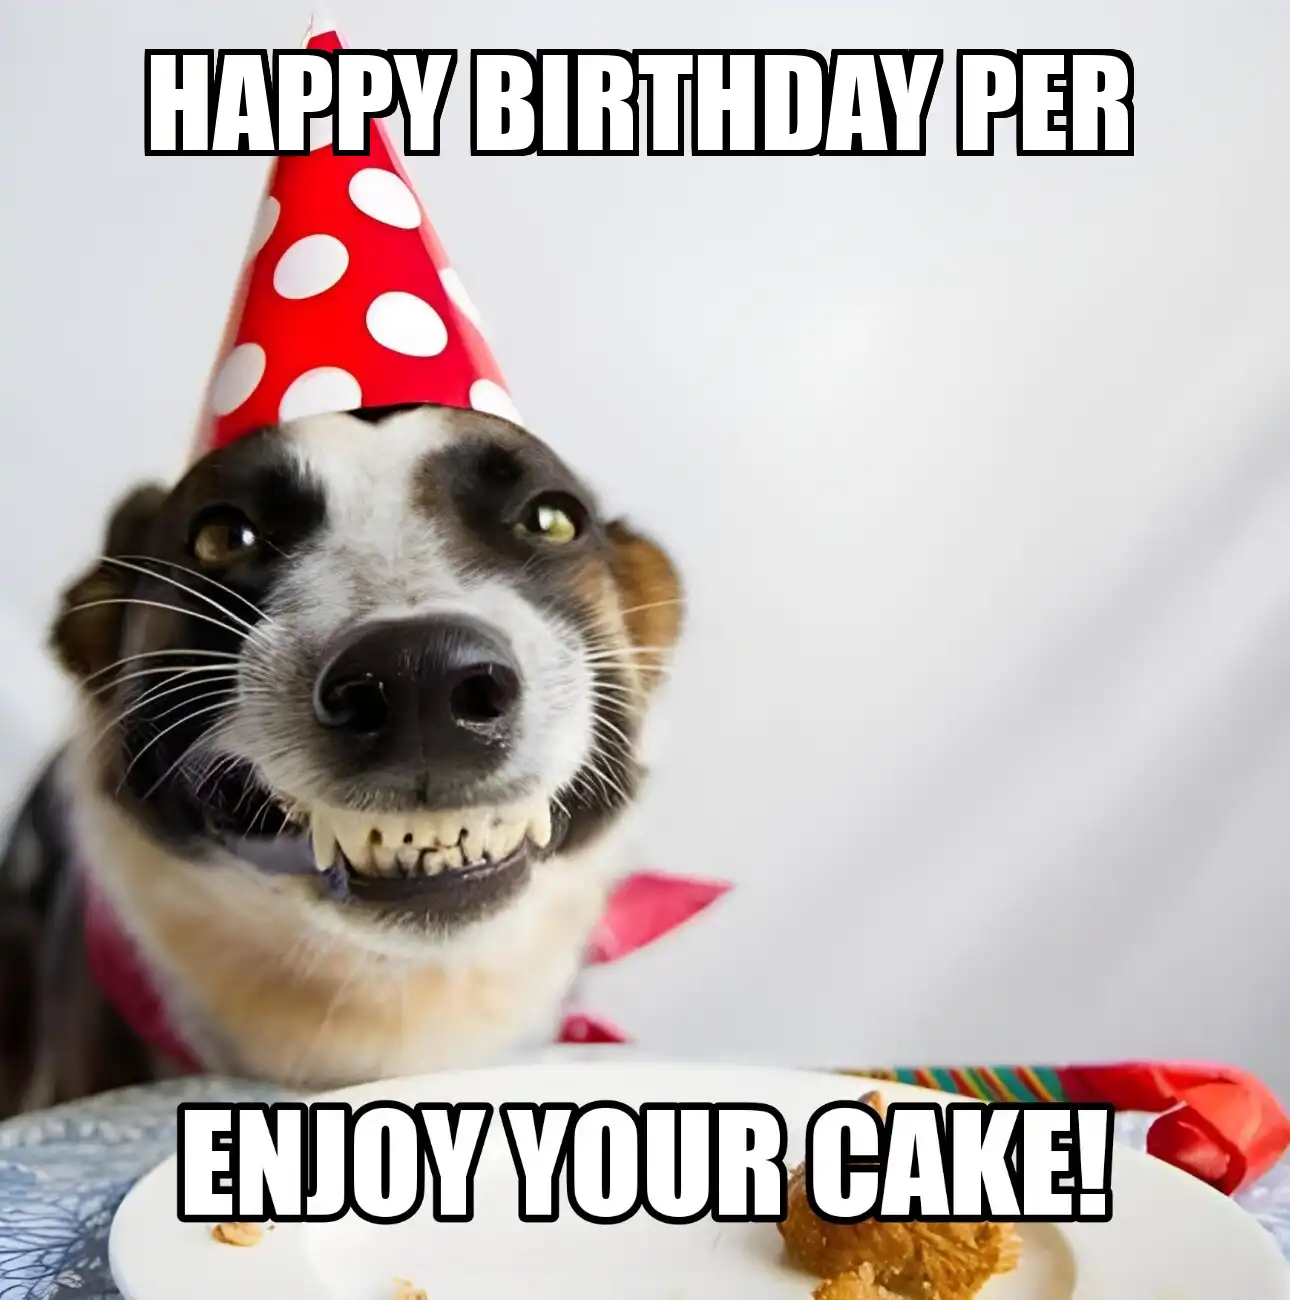 Happy Birthday Per Enjoy Your Cake Dog Meme